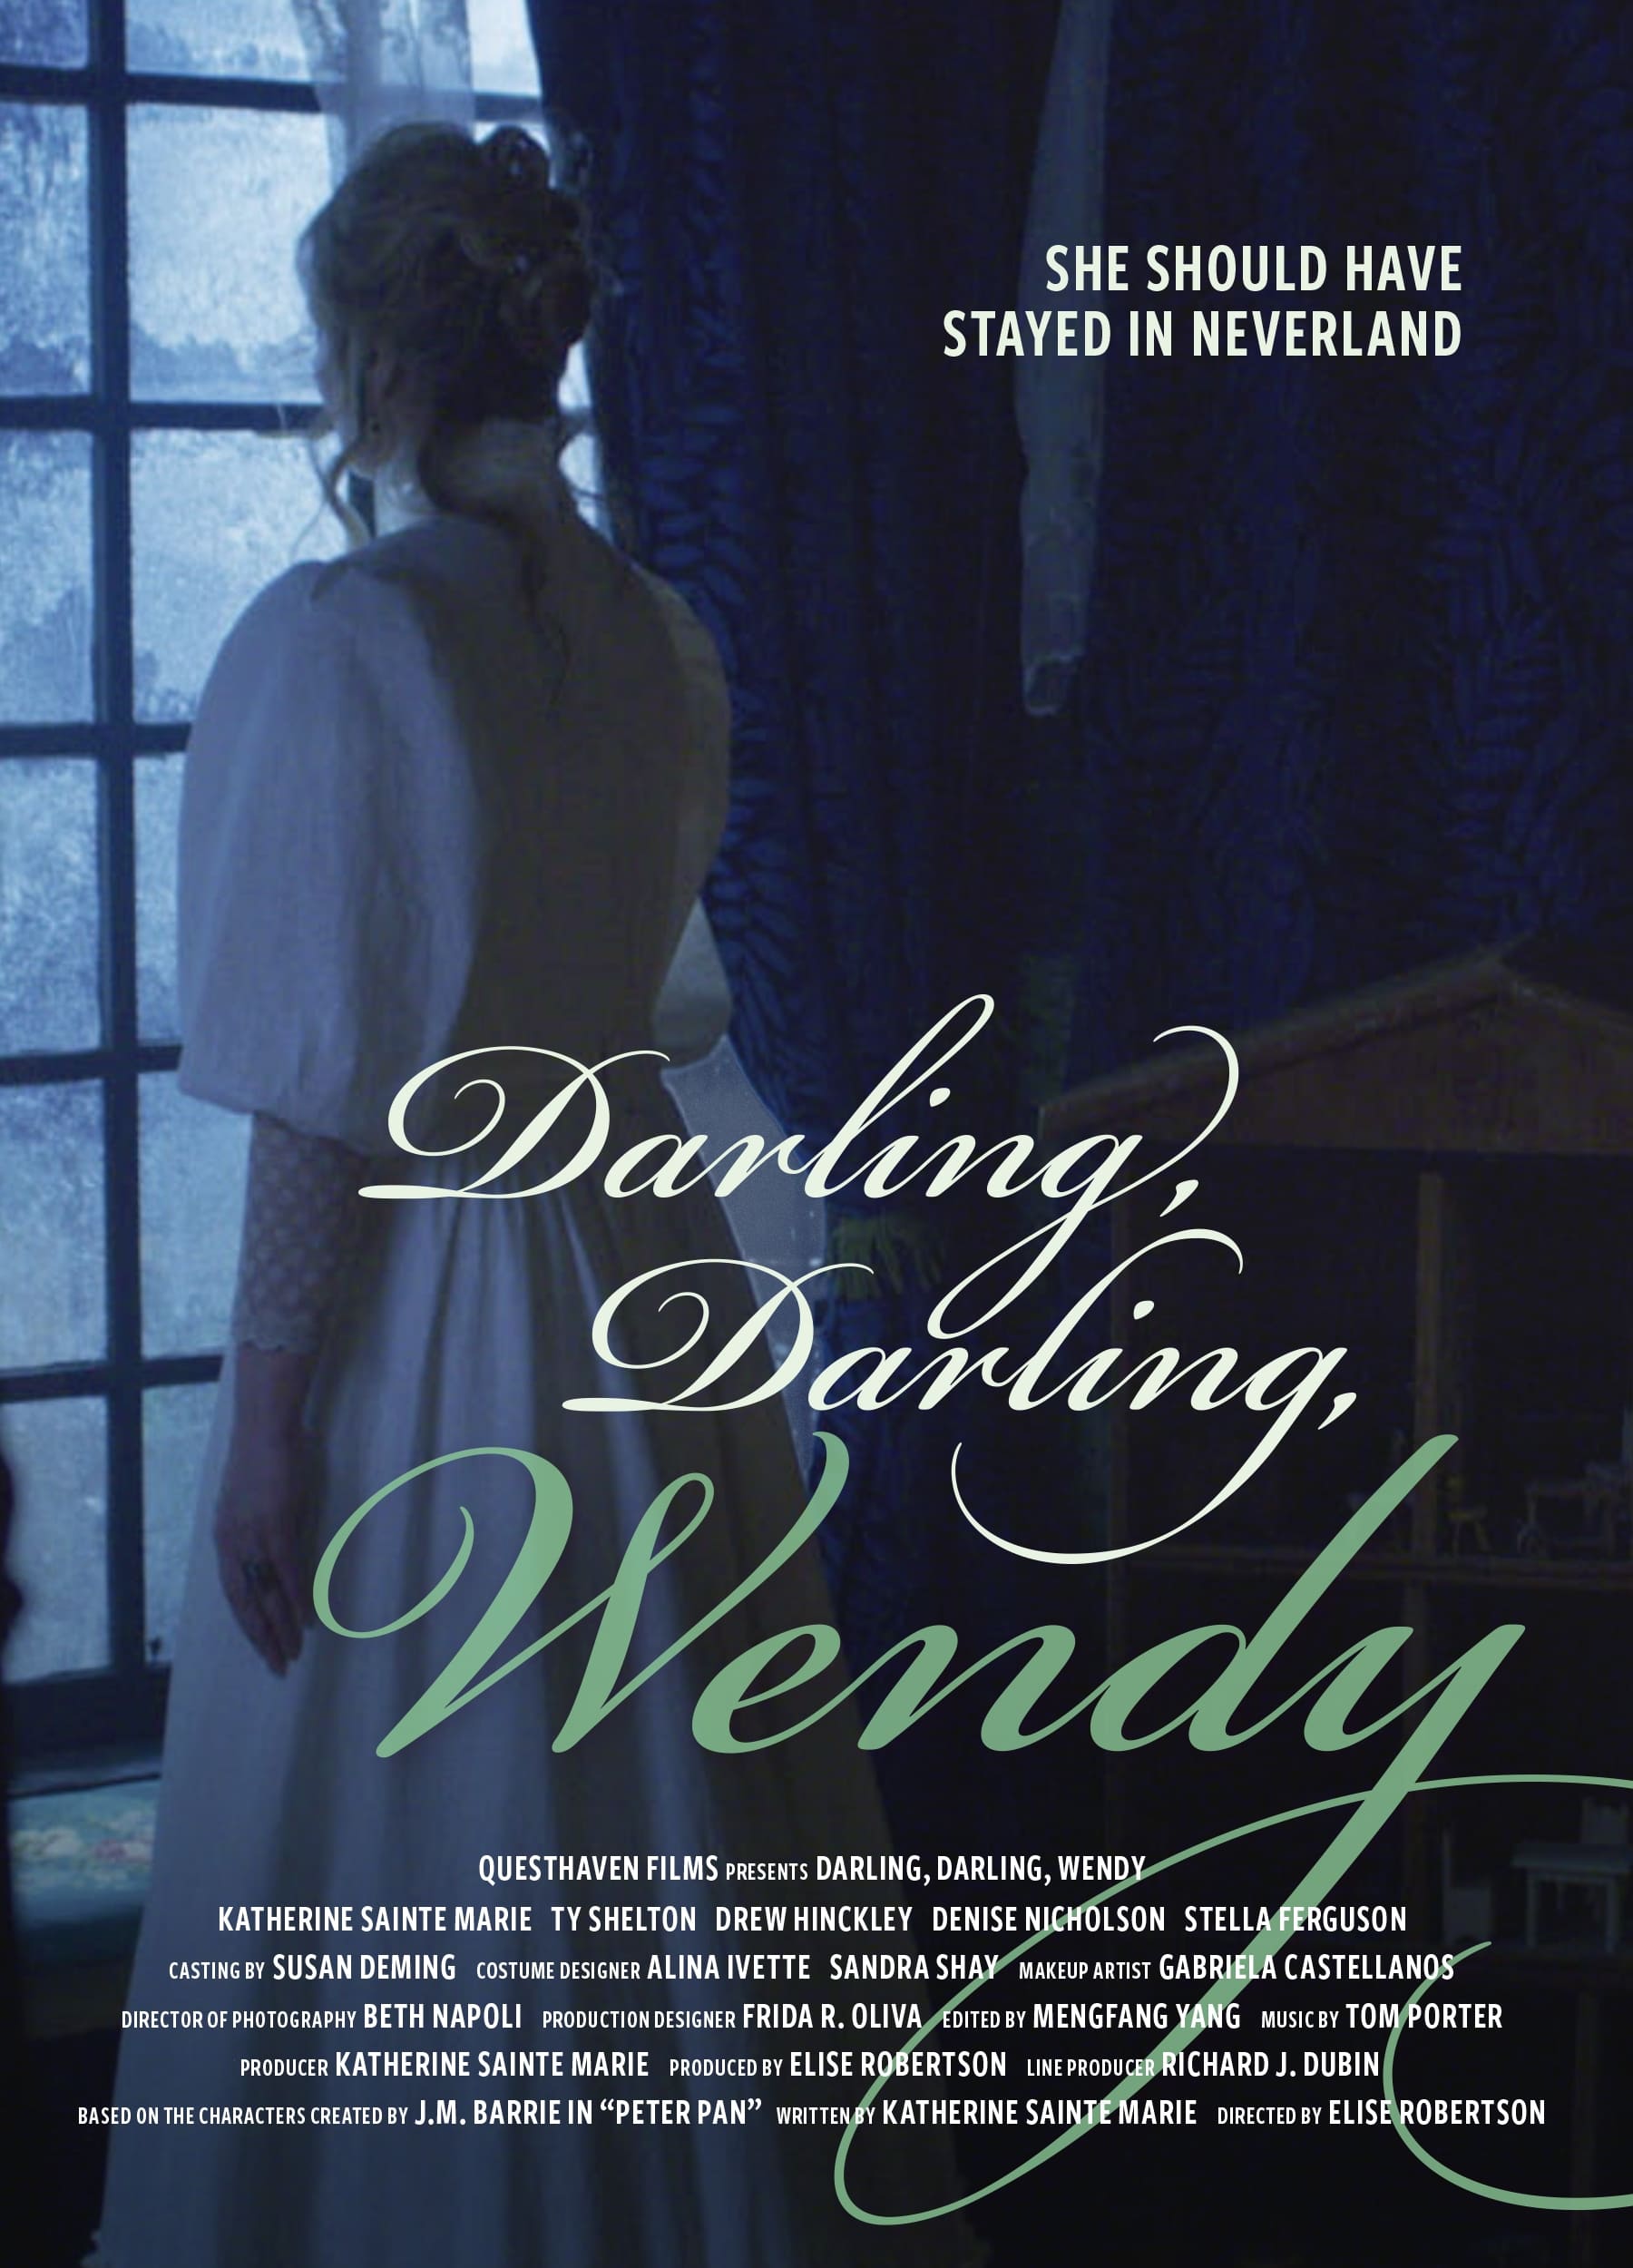 Darling, Darling, Wendy